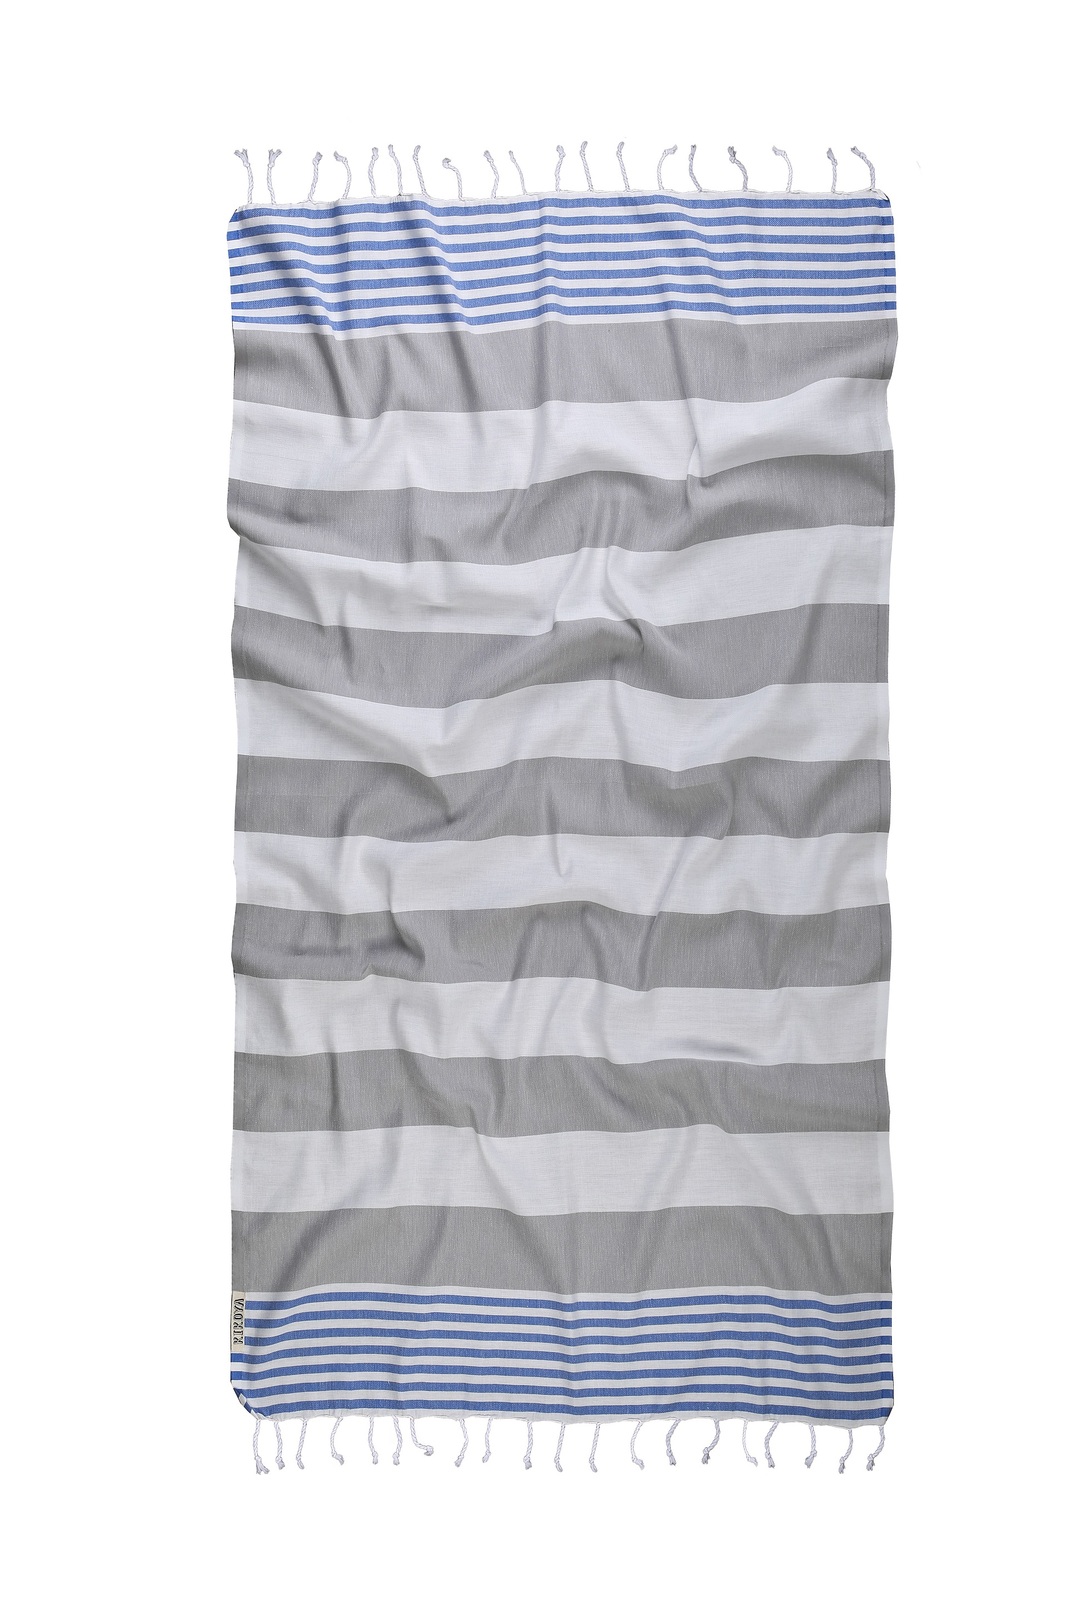 GAMCHA Cotton Washcloth Towel Bath Beach Swim Wear Wrap Scarf 69 x 31 inches 4 